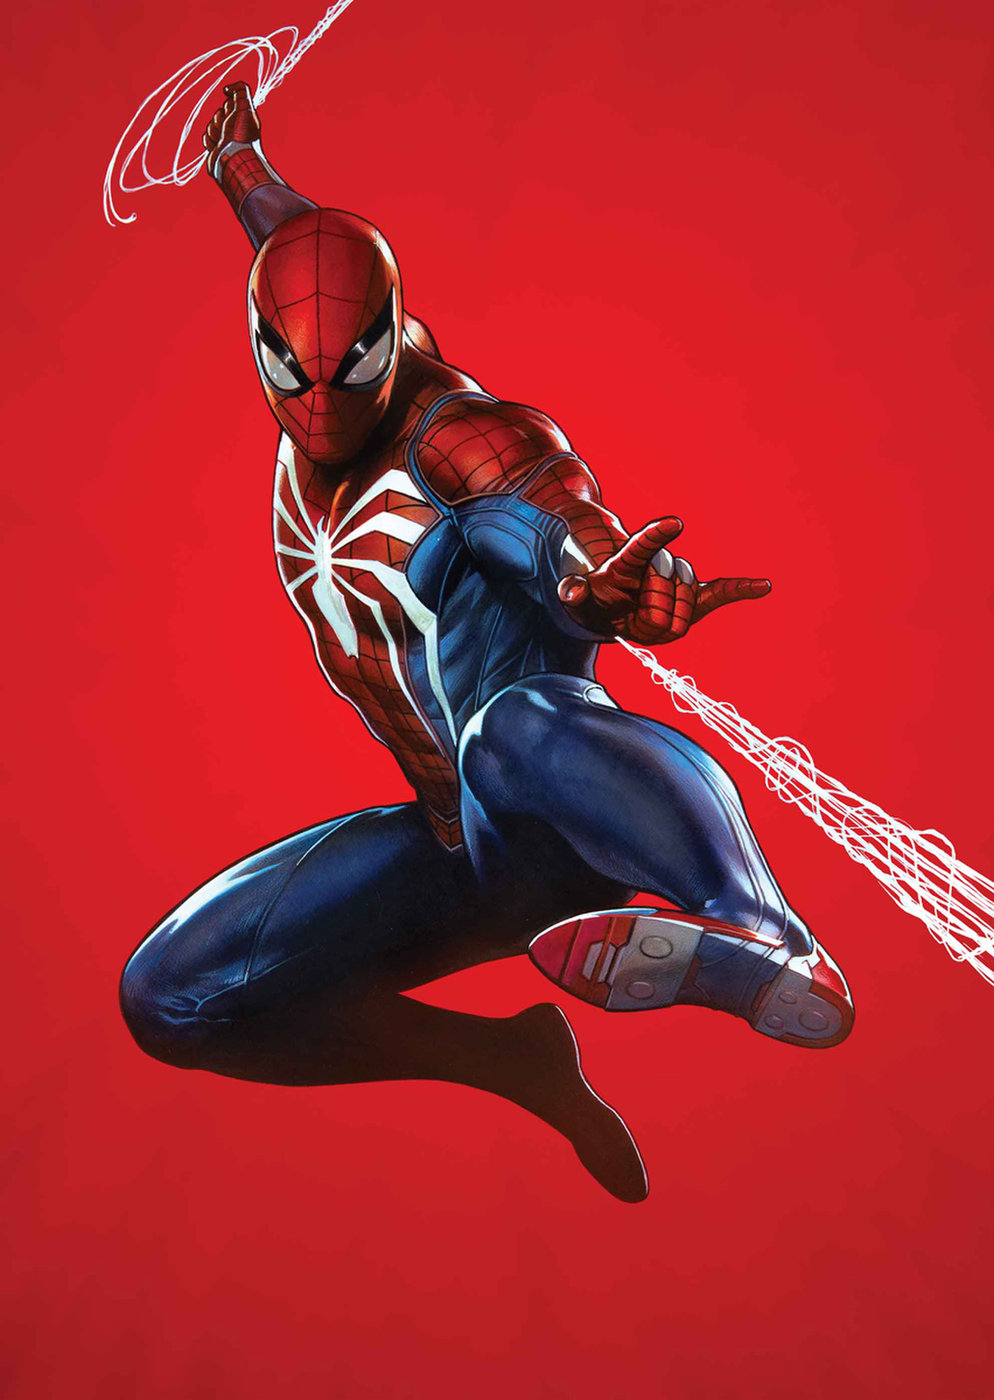 Marvel's Spider-Man 2 - A Insomniac quer tornar todos os segundos